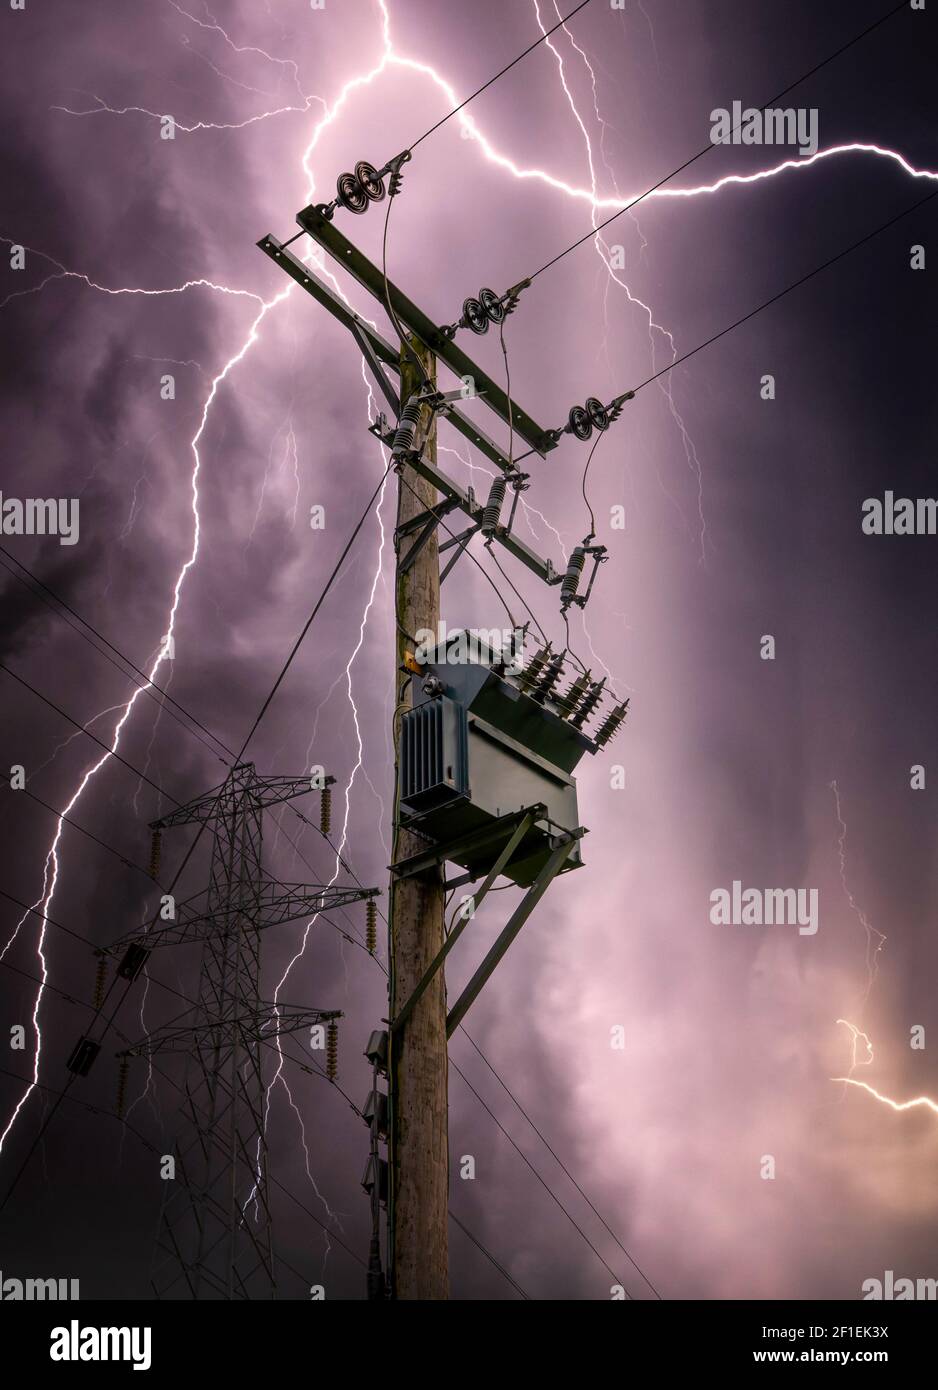 Bright Blitz Schrauben treffen elektrische Power Pylon Tower Kabel und Unterstation schlagen. Elektrizität Entladung Wolke zu Boden Sturm mit Transformator Stockfoto